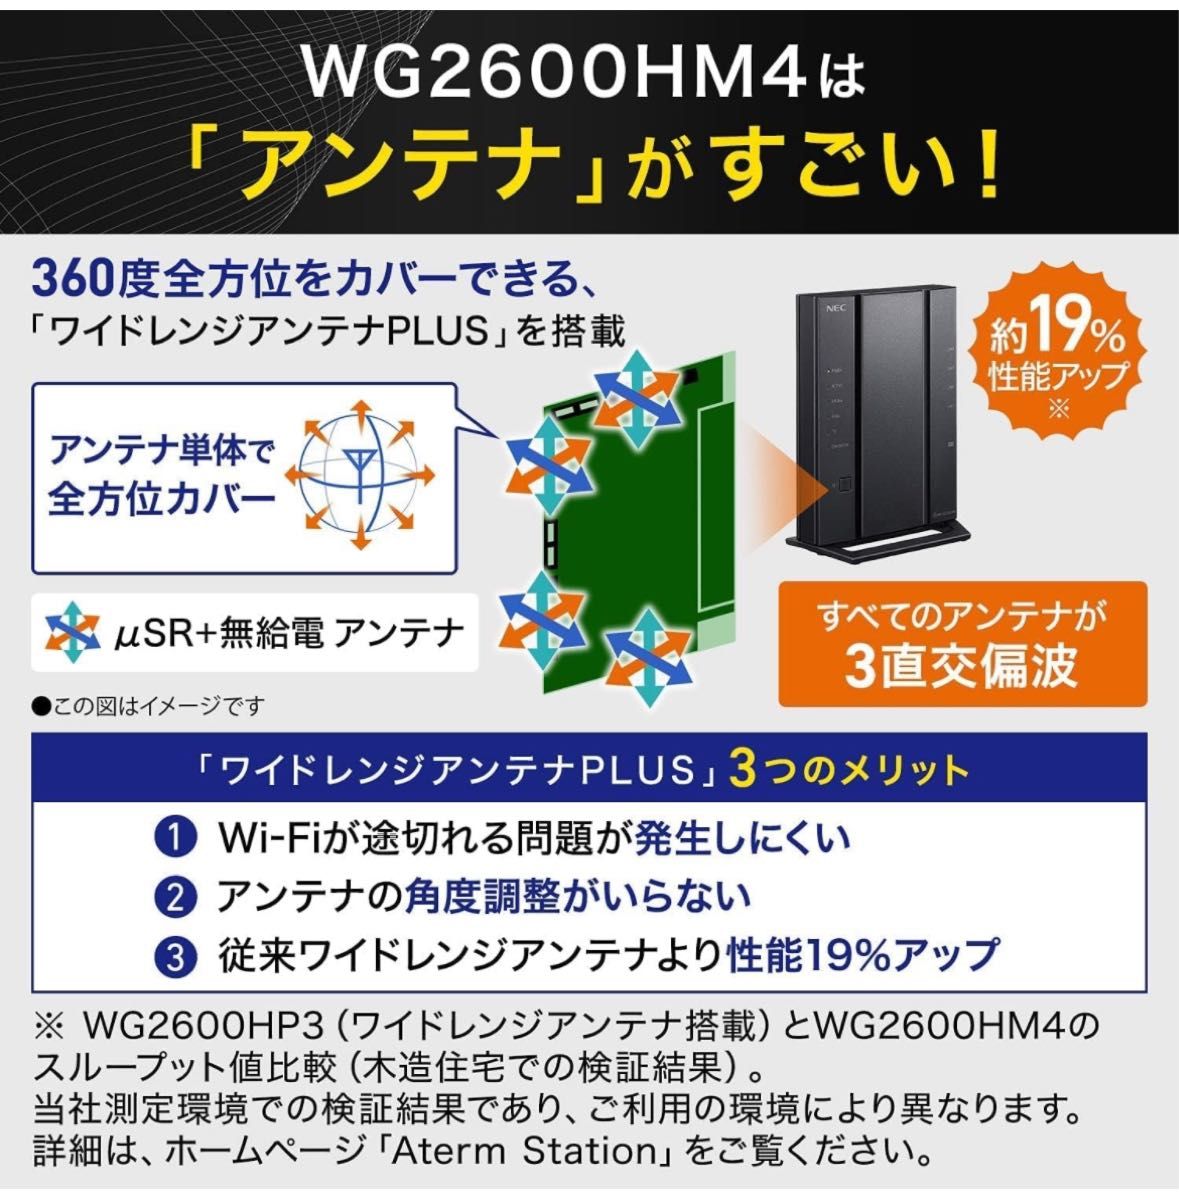 【新品未使用】NEC 無線LAN Wi-Fiルーター WiFi5 (11ac) AC2600 PA-WG2600HM4